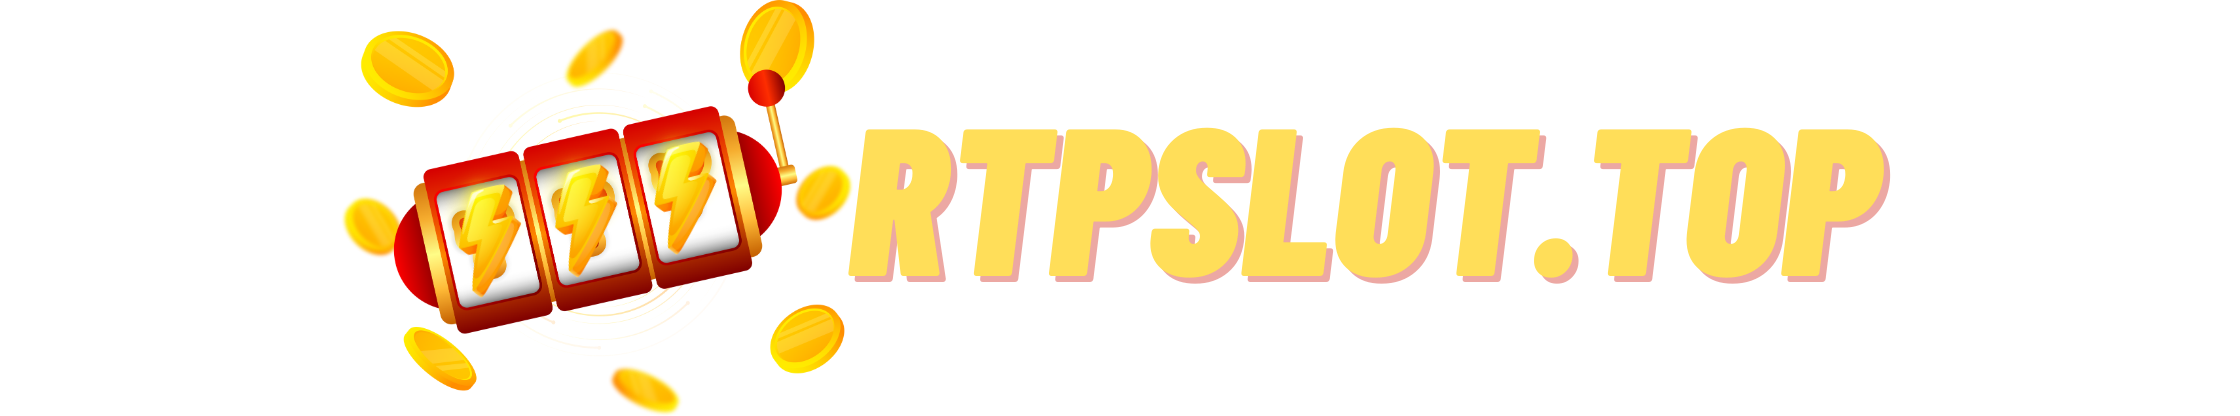 Tingkatkan Peluang dengan RTP Slot di rtpslot.top